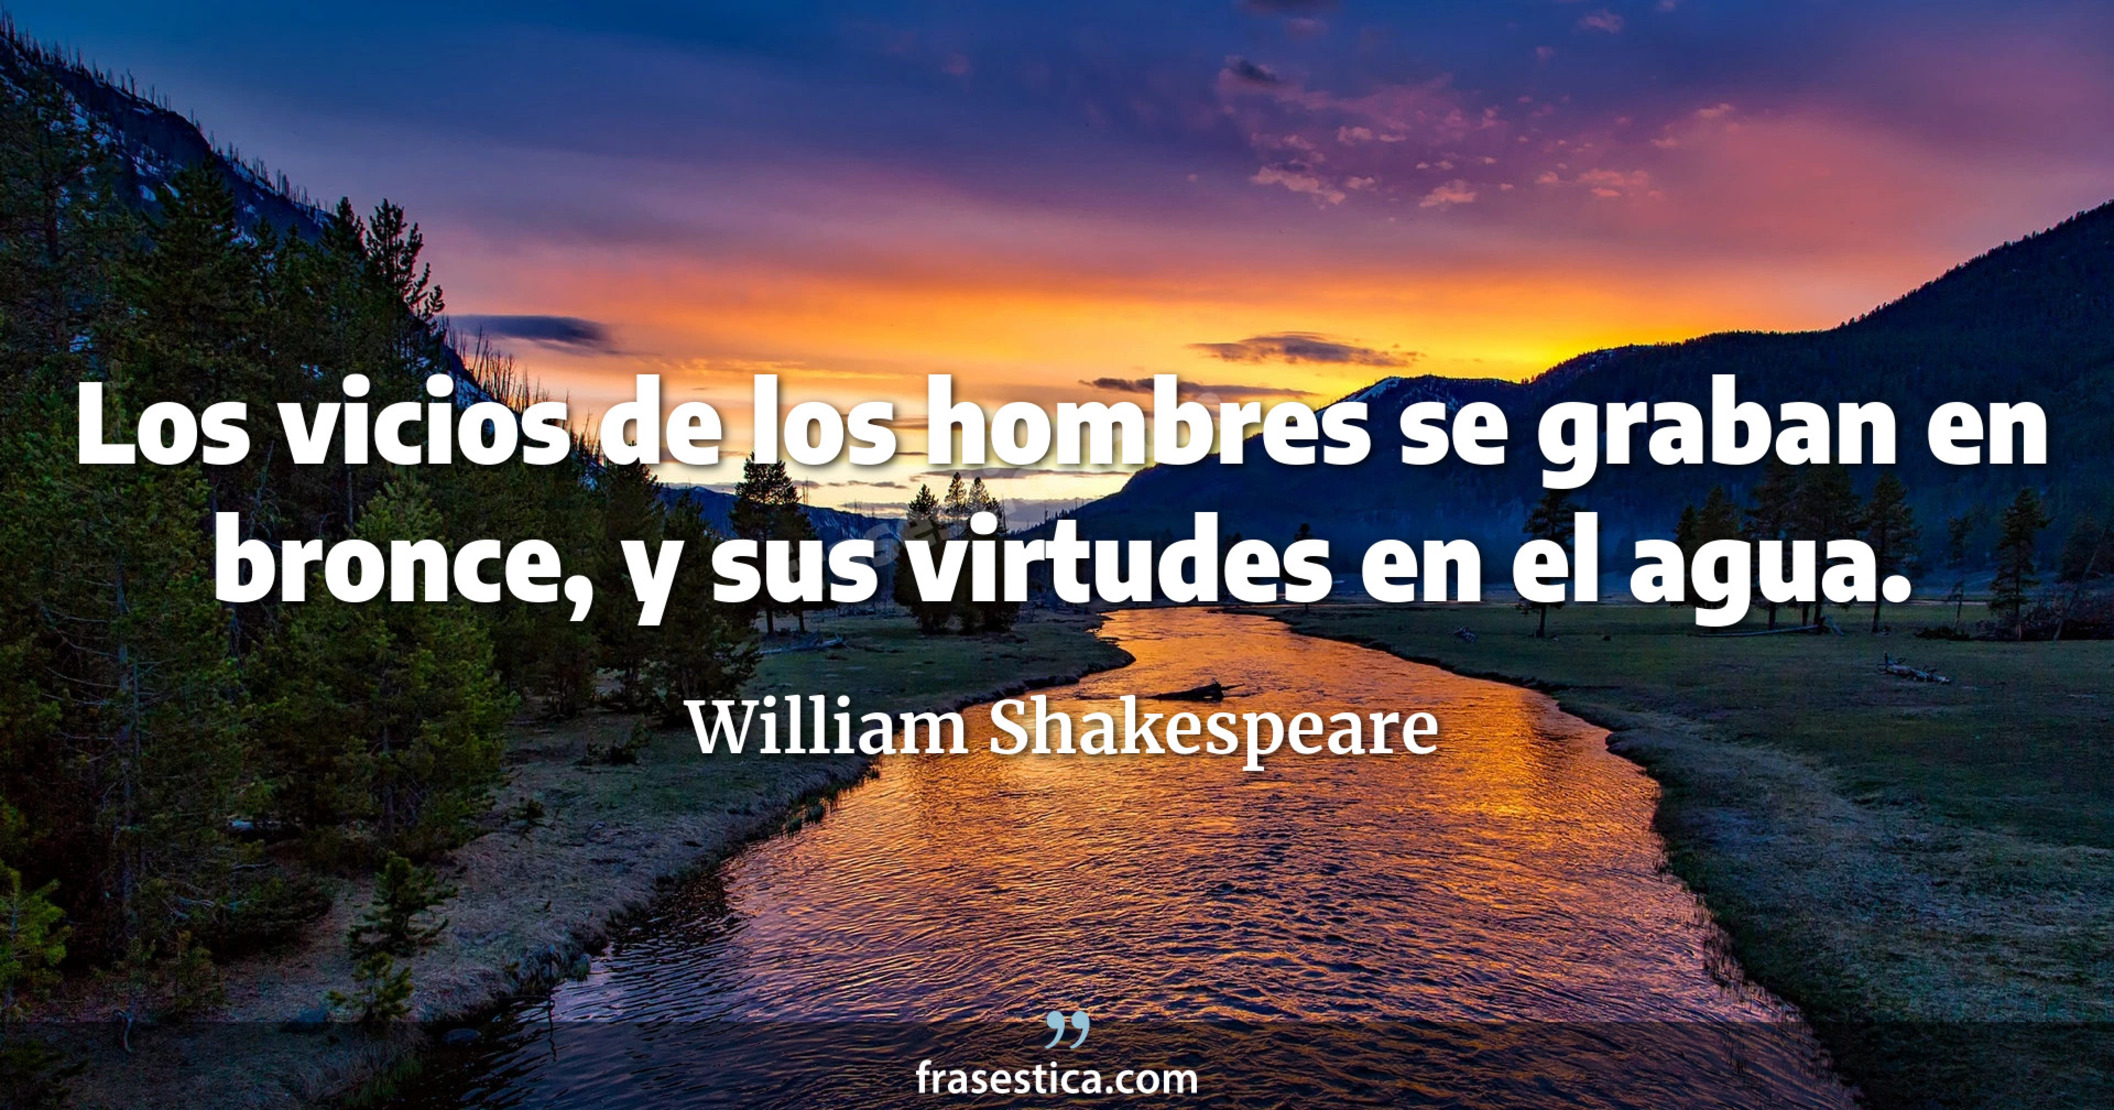 Los vicios de los hombres se graban en bronce, y sus virtudes en el agua. - William Shakespeare